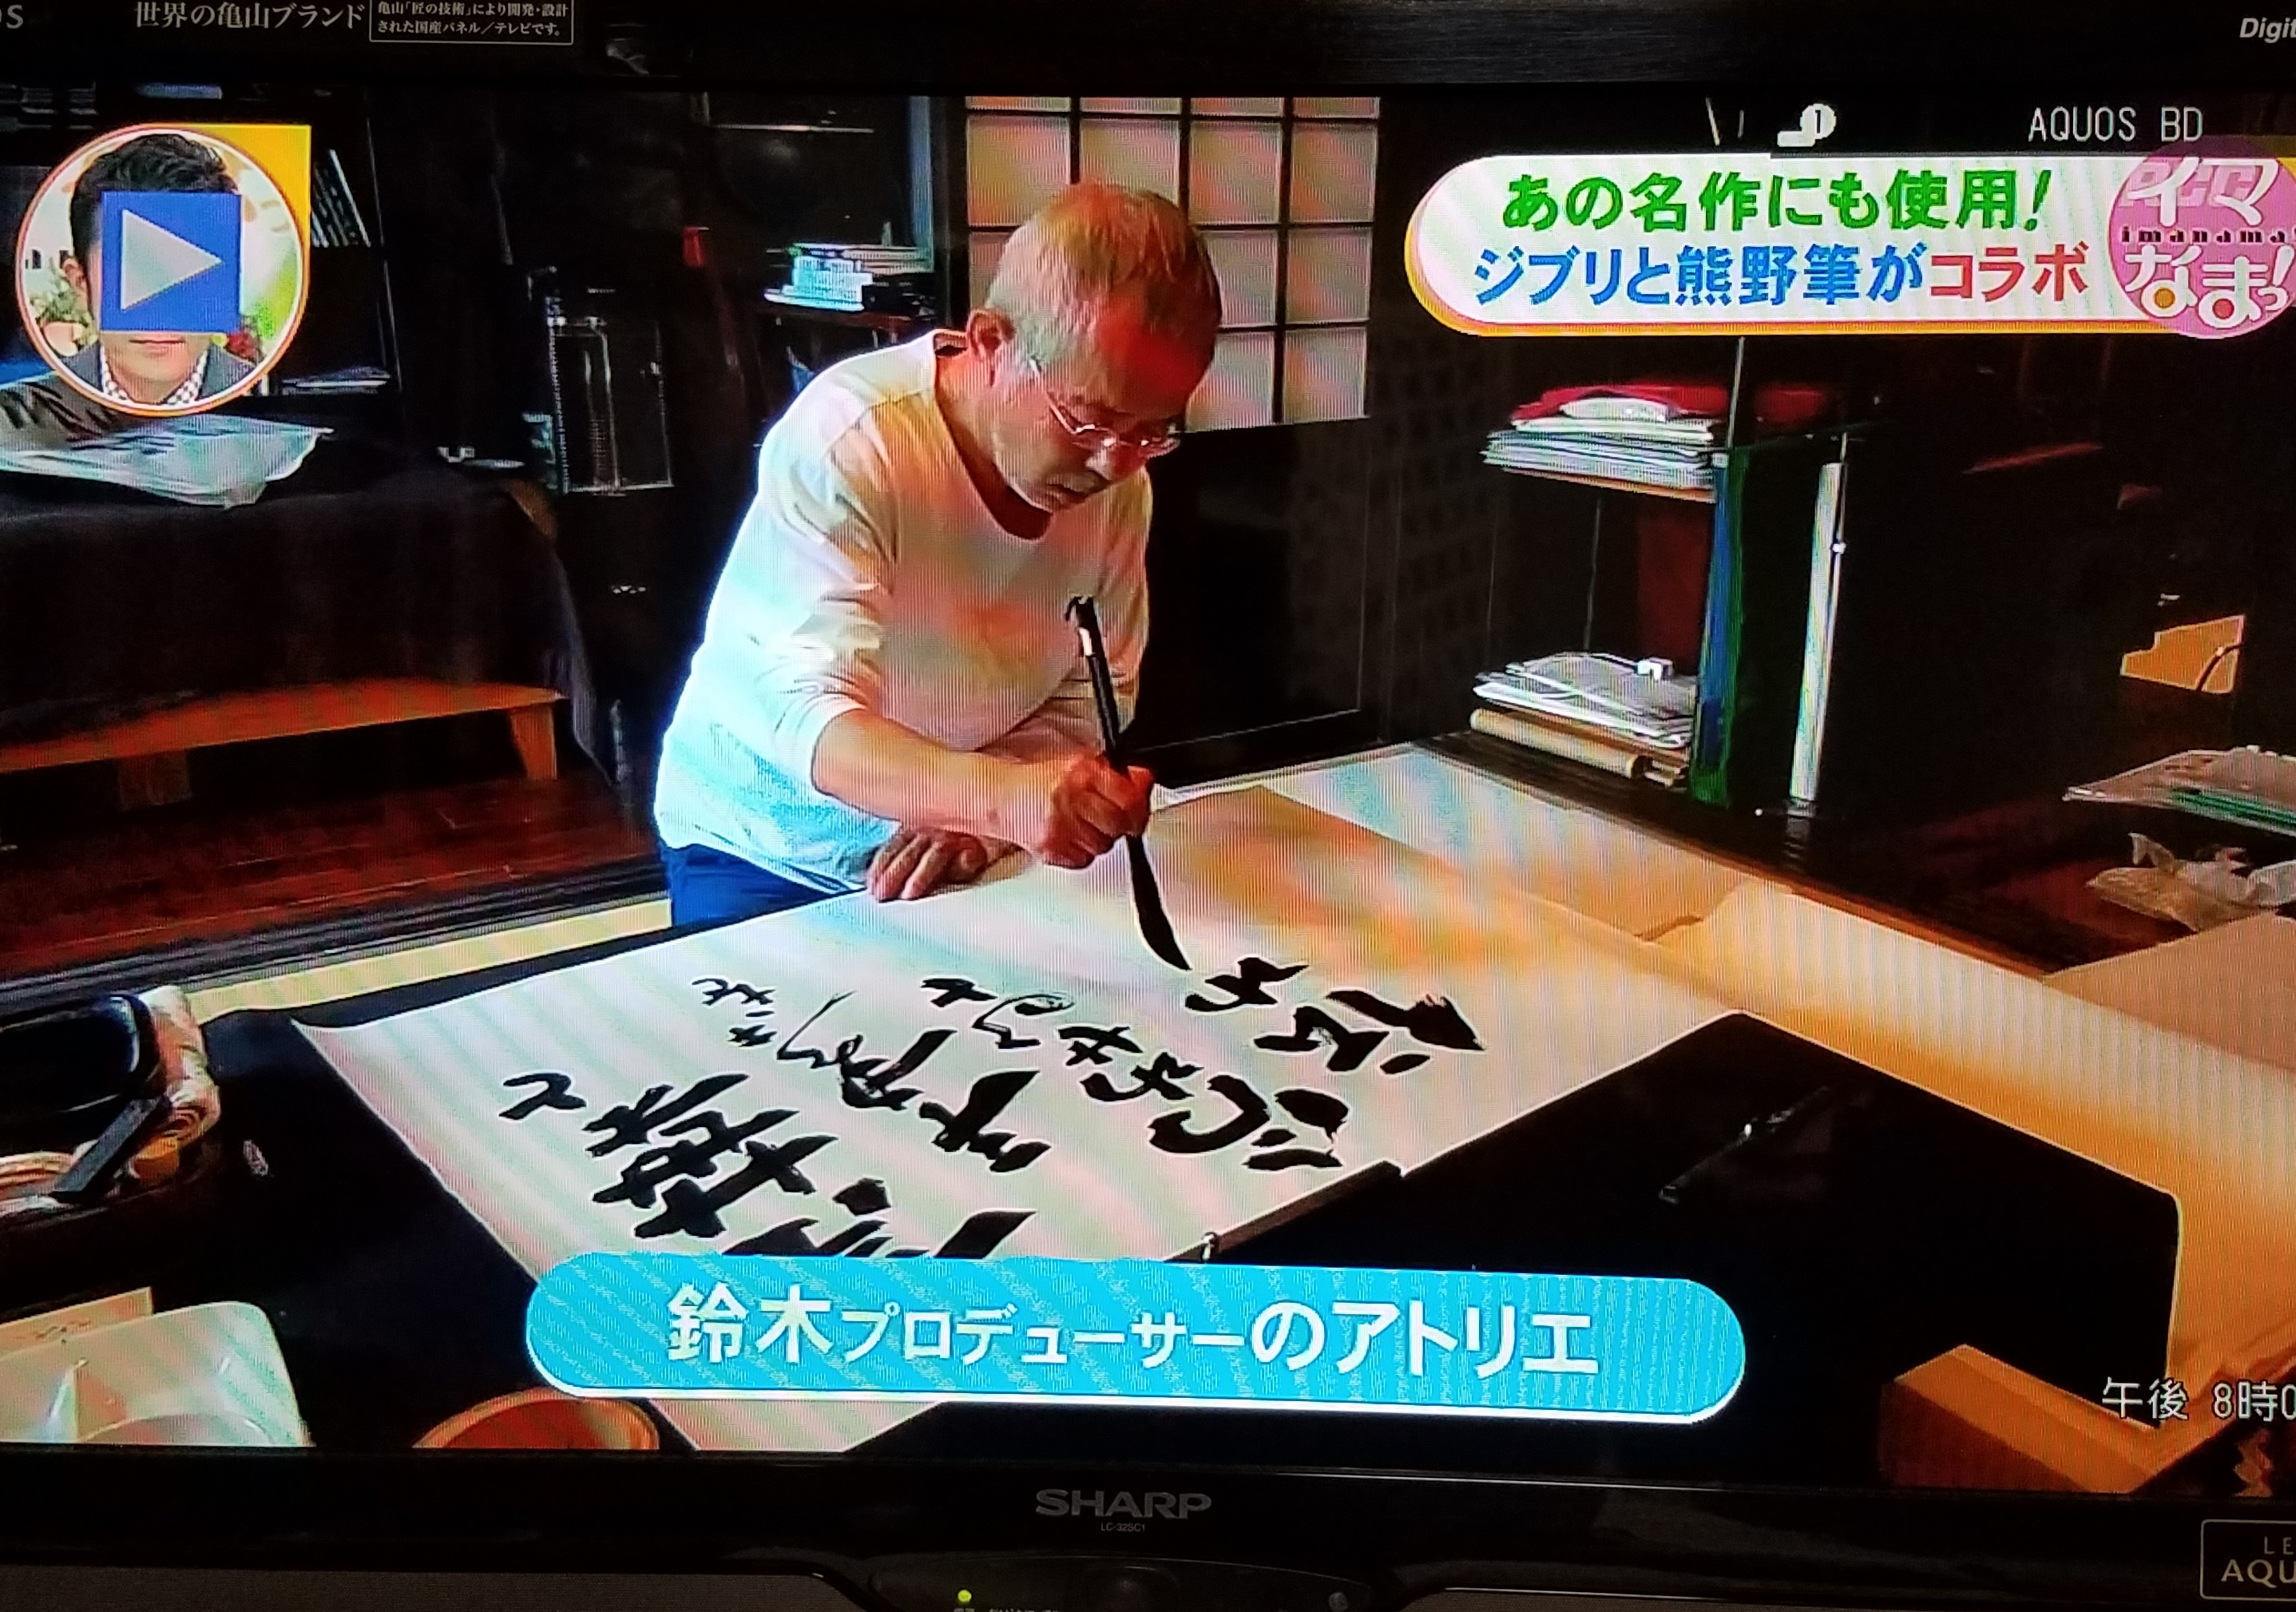 ジブリのタイトルロゴは熊野筆を使う鈴木敏夫さんの手書きによるものが多いのです。